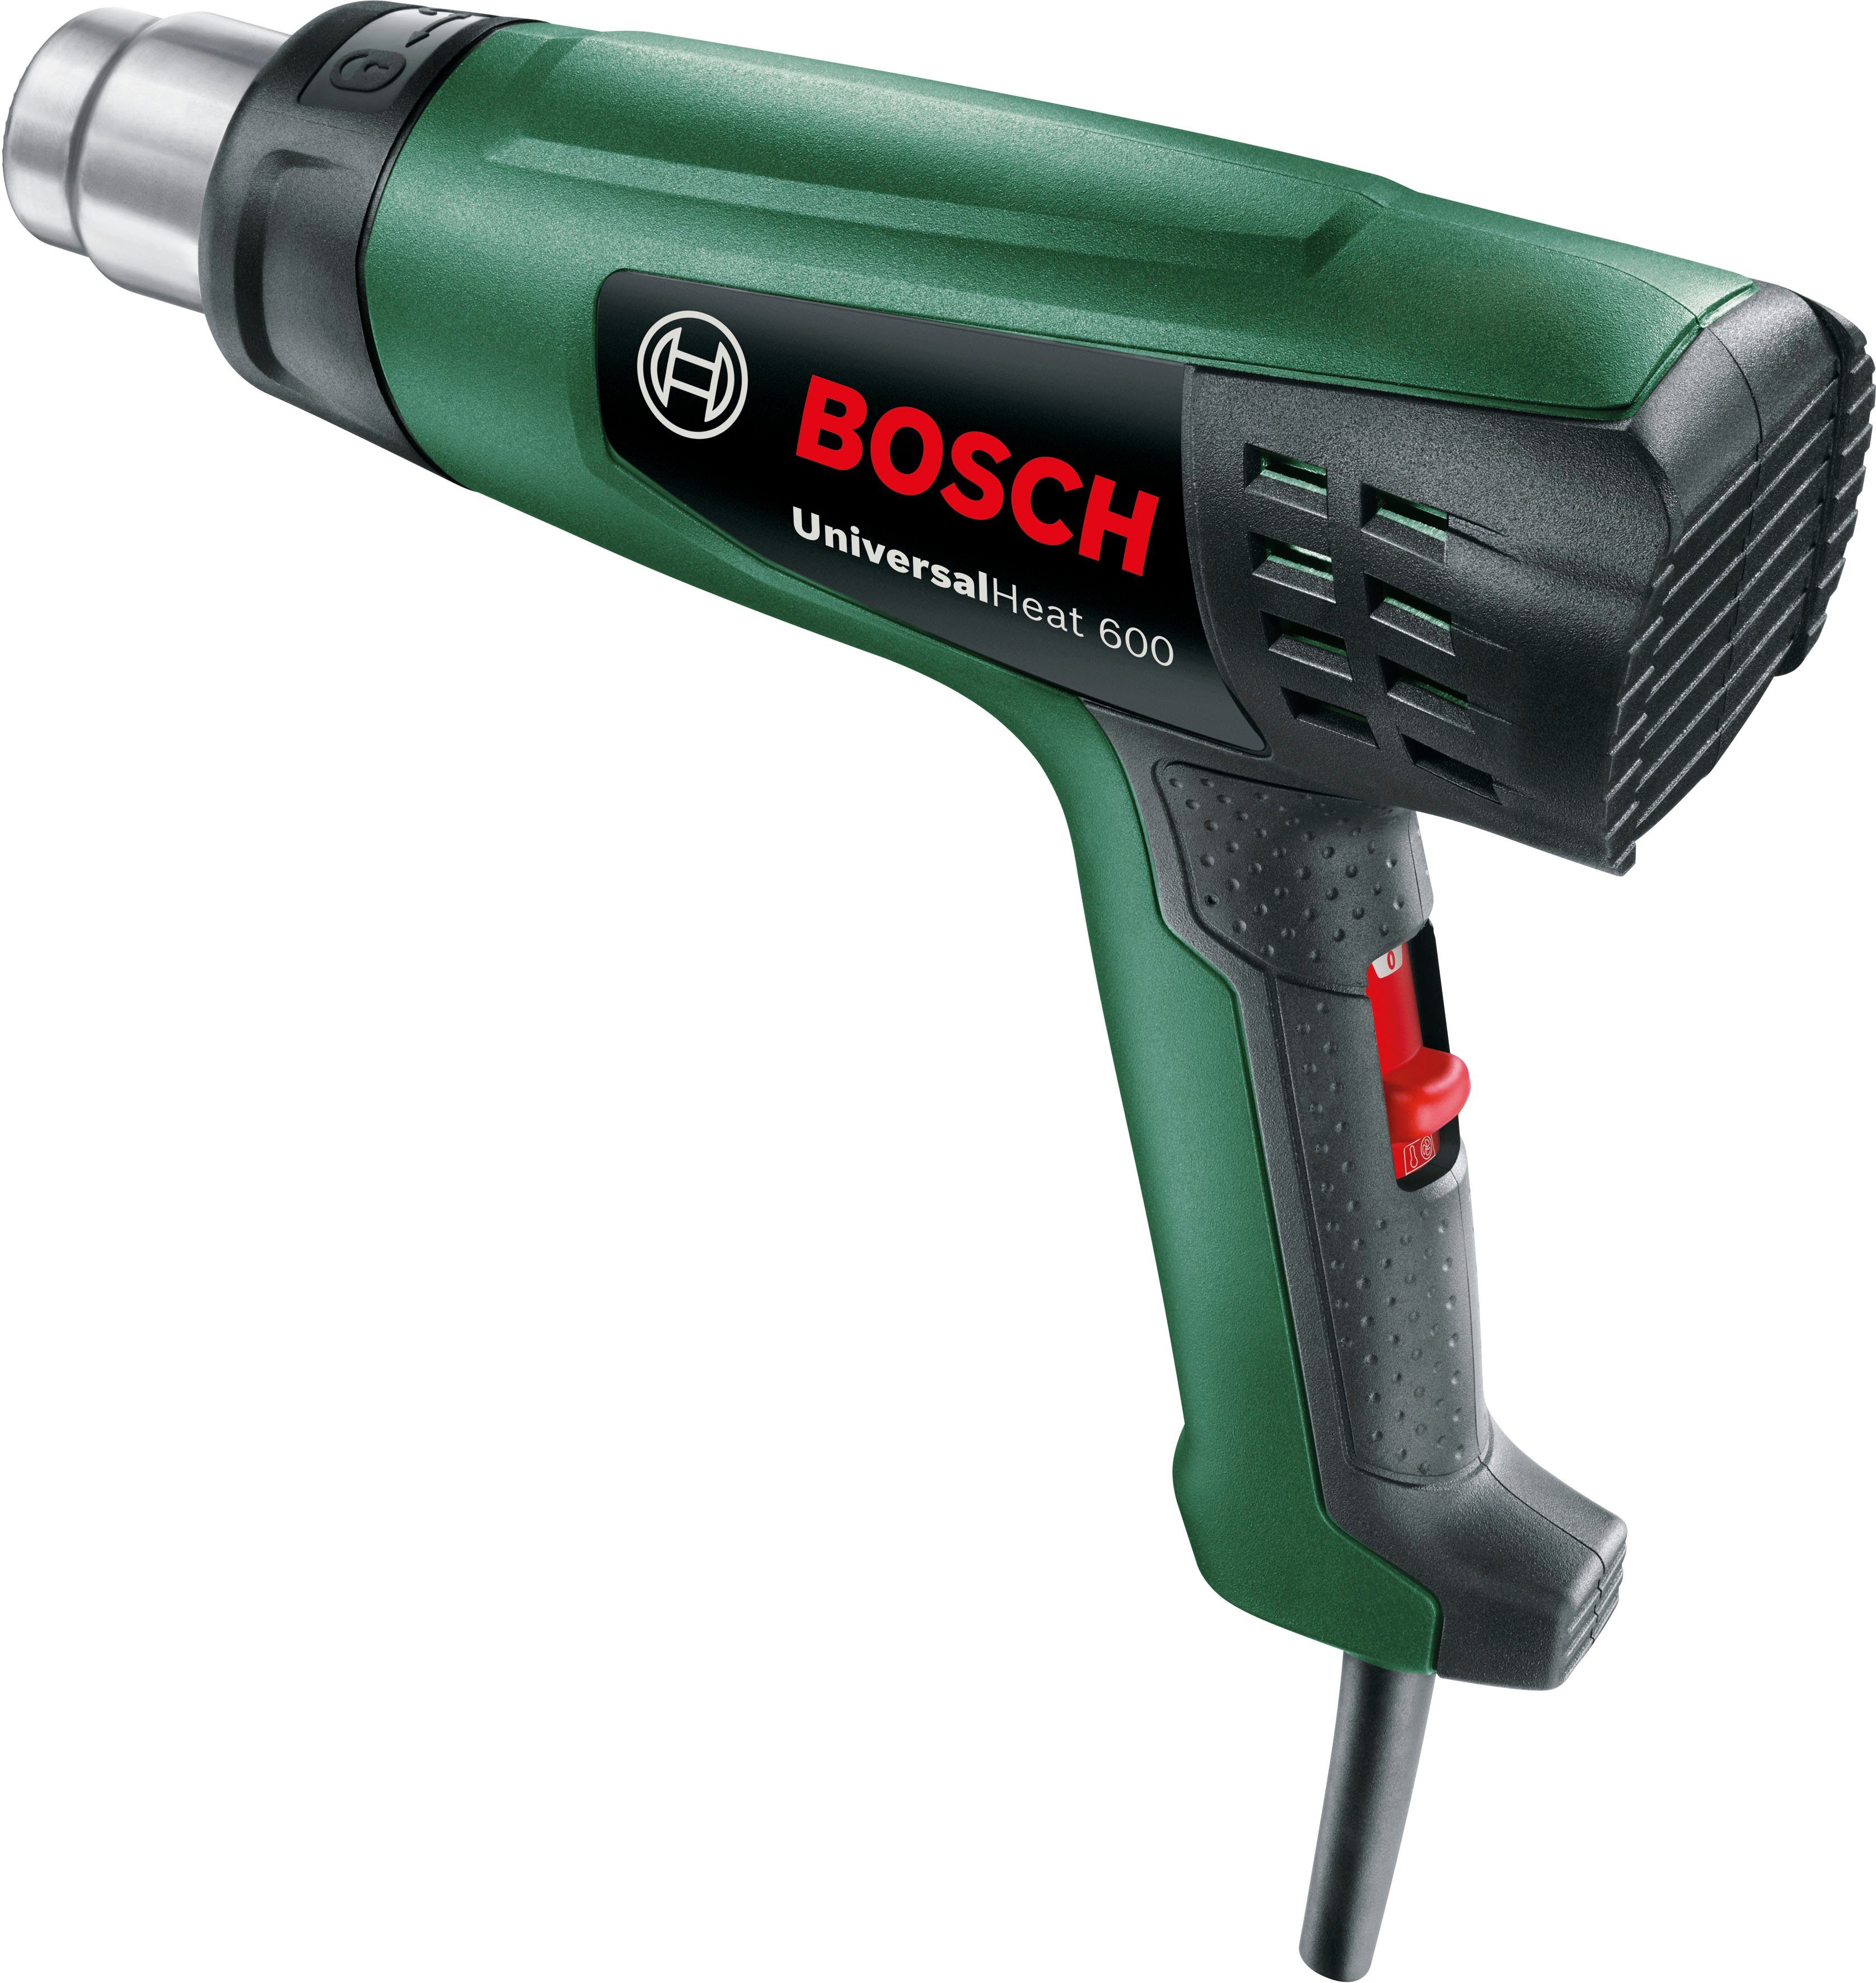 °C max. Bosch bis Home Heißluftgebläse & Garden 600 600, UniversalHeat